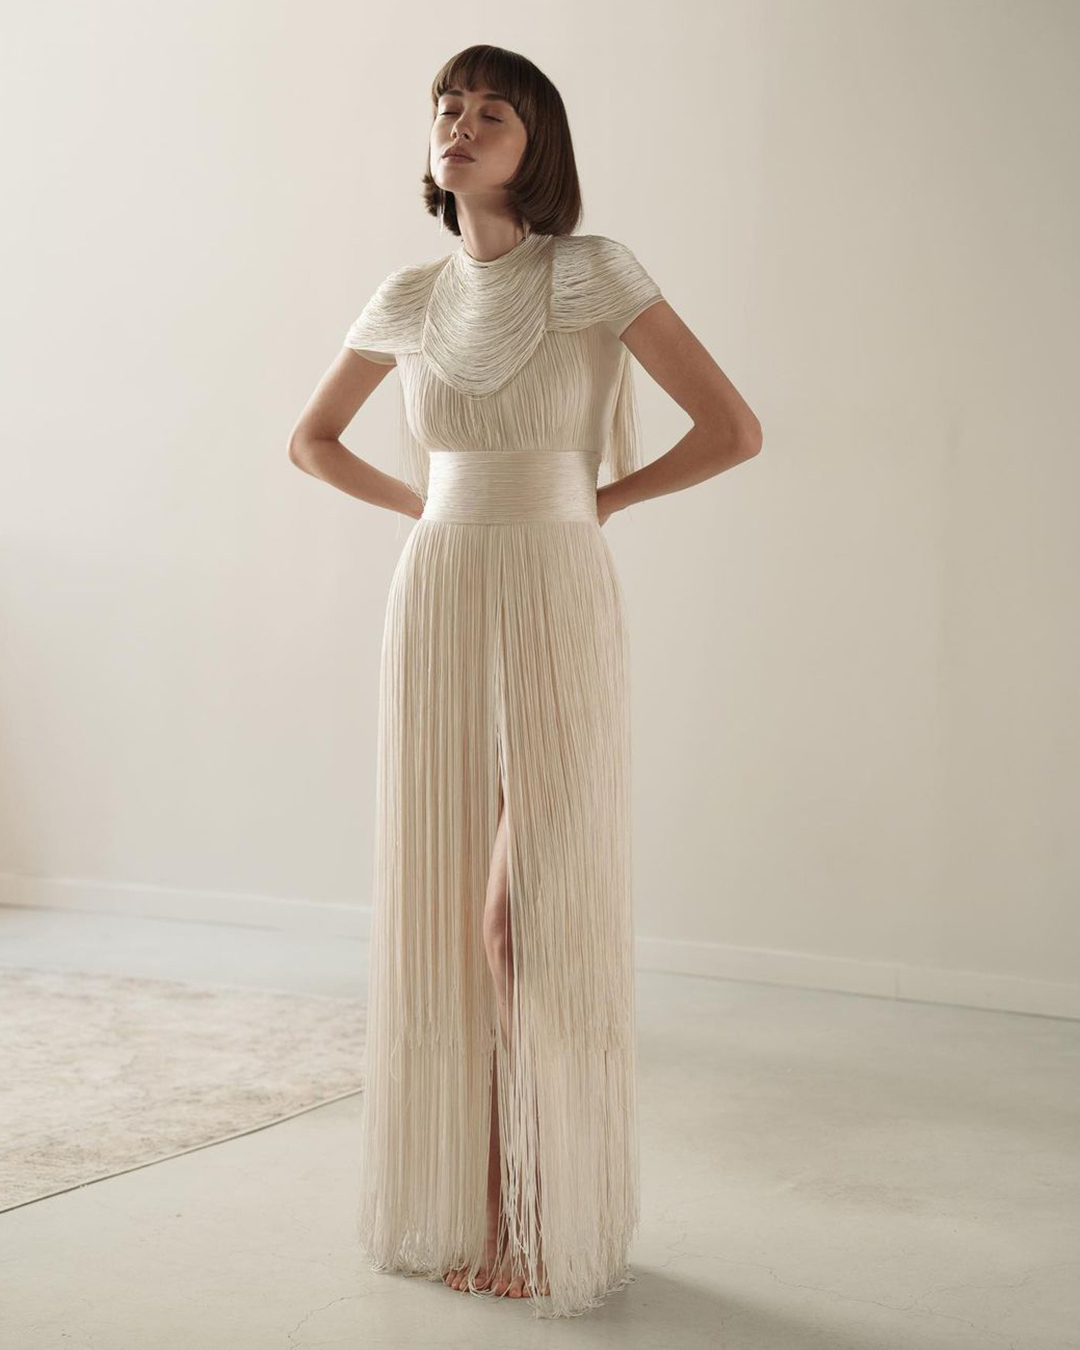 vintage inspired wedding dresses simple with fringe gatsby chanamarelus